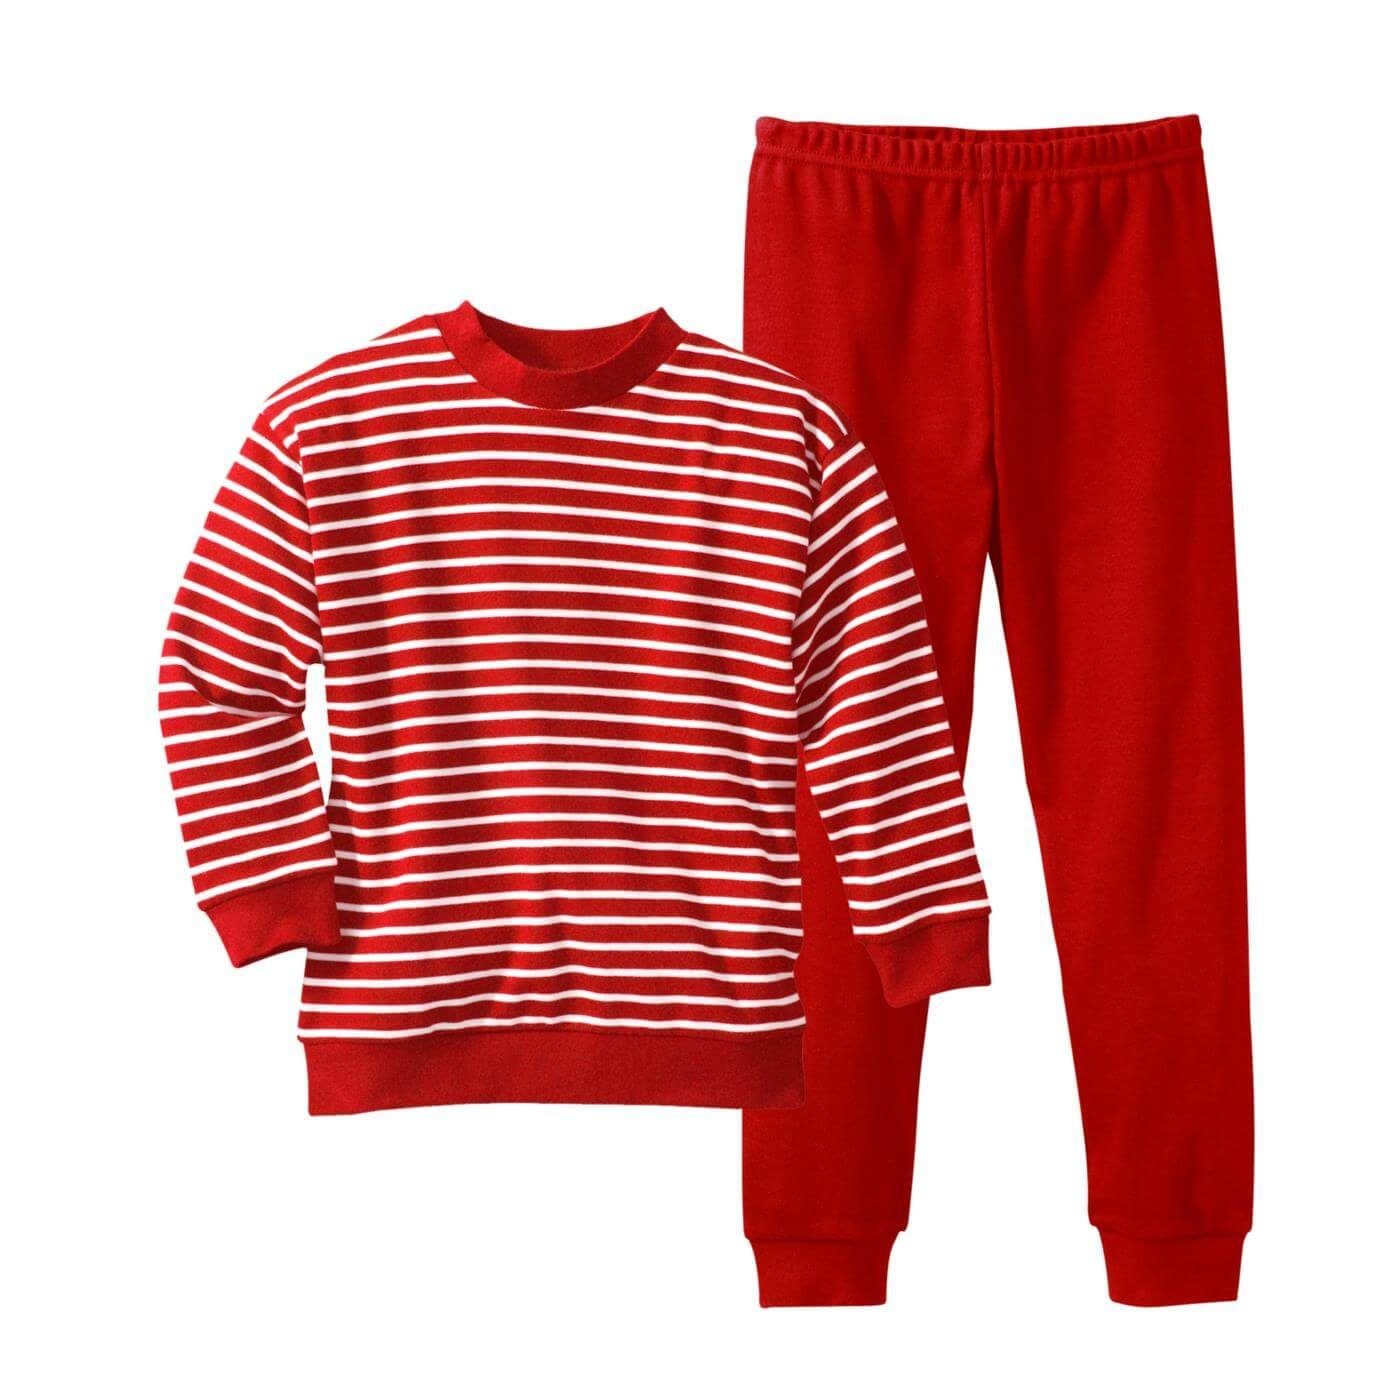 LIVING CRAFTS Schlafanzug Sanfter, bequemer interlock-Stoff White/Red Striped